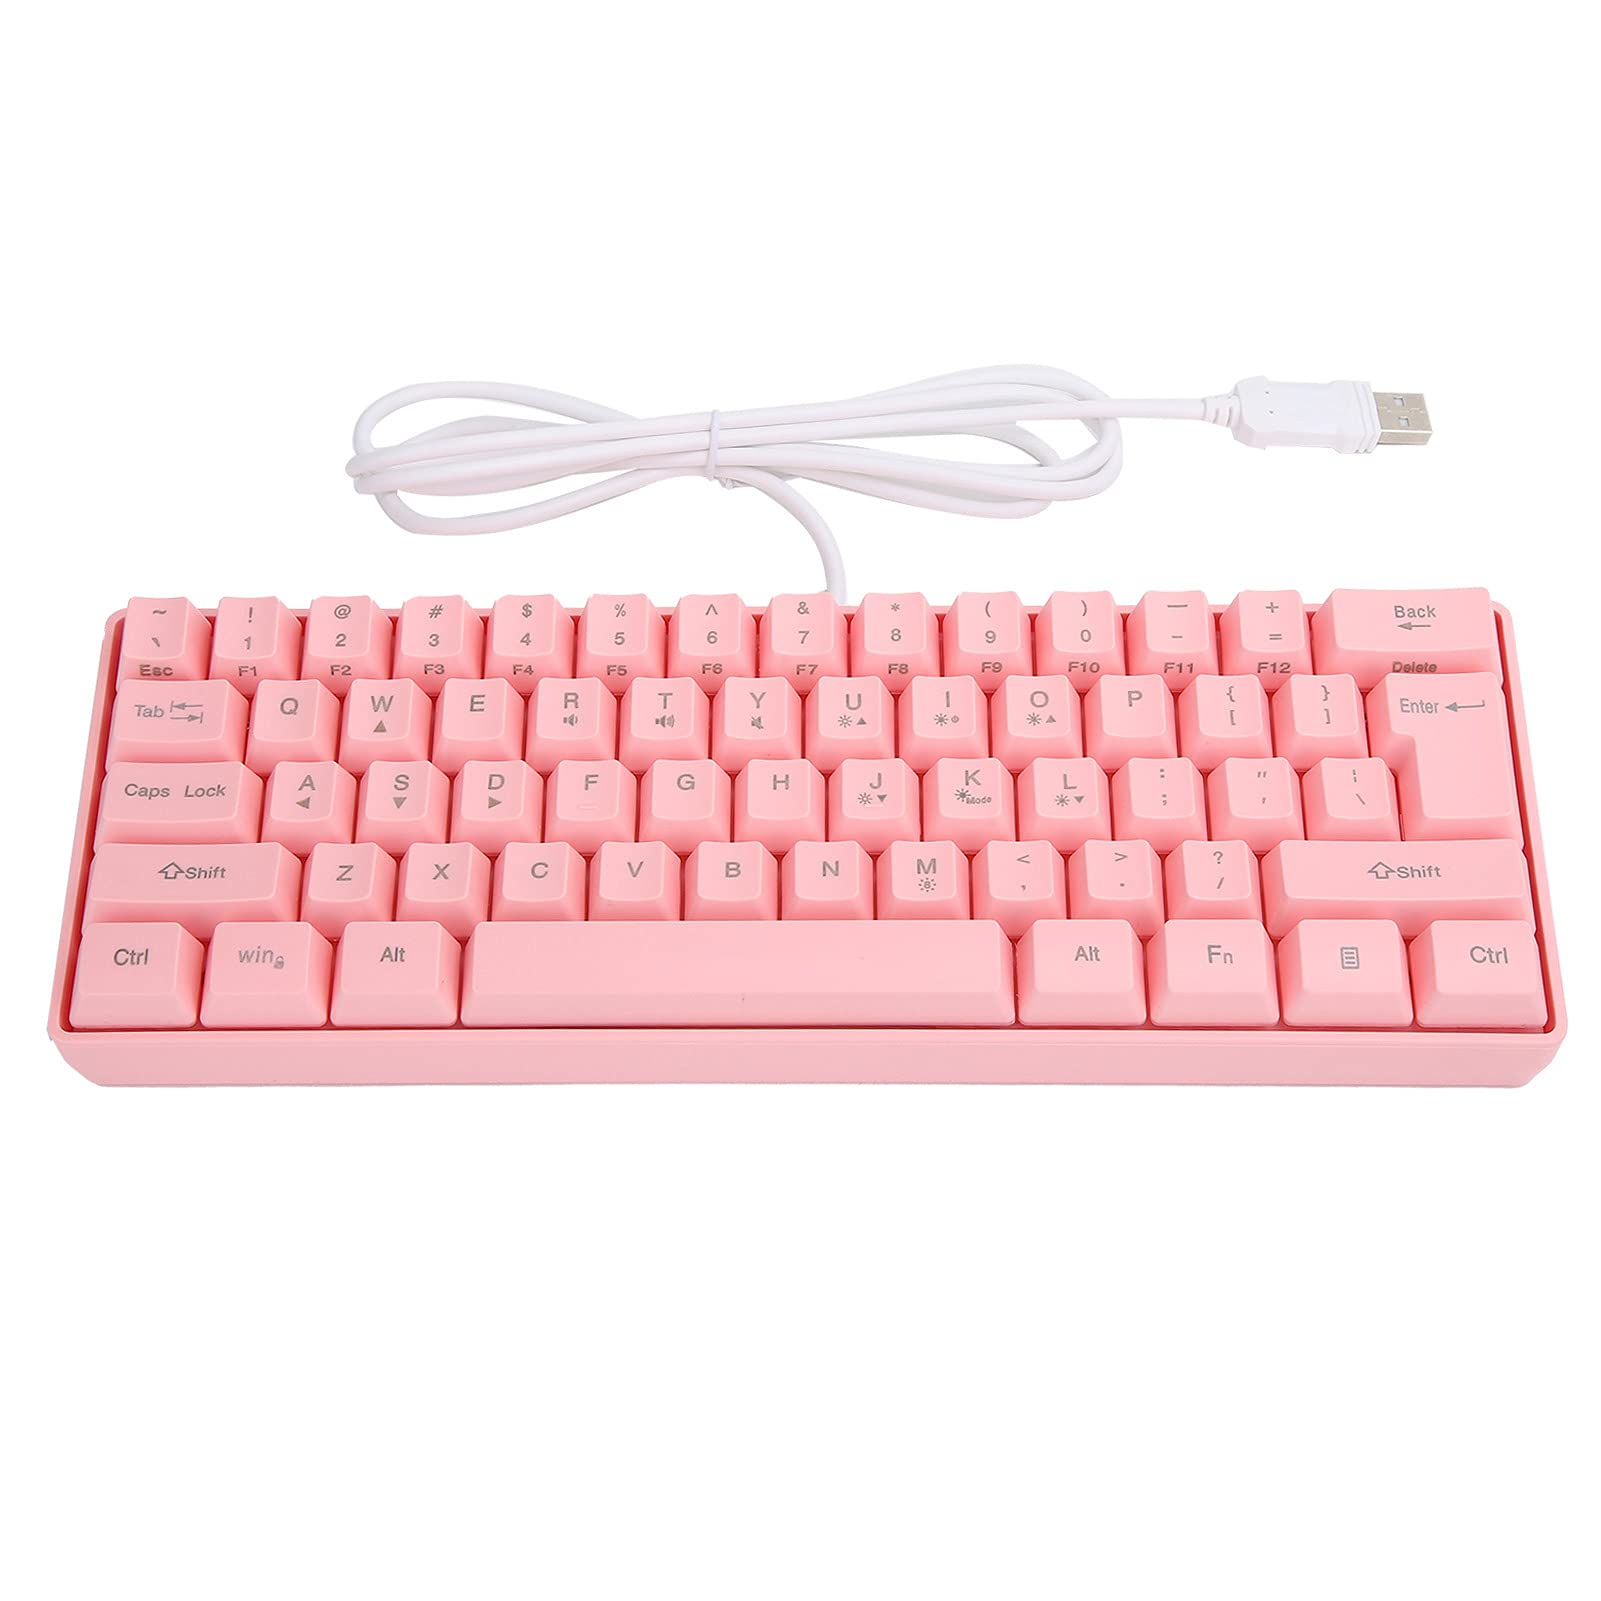 Sxhlseller Gaming-Tastatur, V700 Tragbare RGB-Tastatur mit Hintergrundbeleuchtung Gaming USB 61-Tasten Kabelgebundenes Mechanisch Beleuchtetes Gamer Pink für Laptop-Desktop